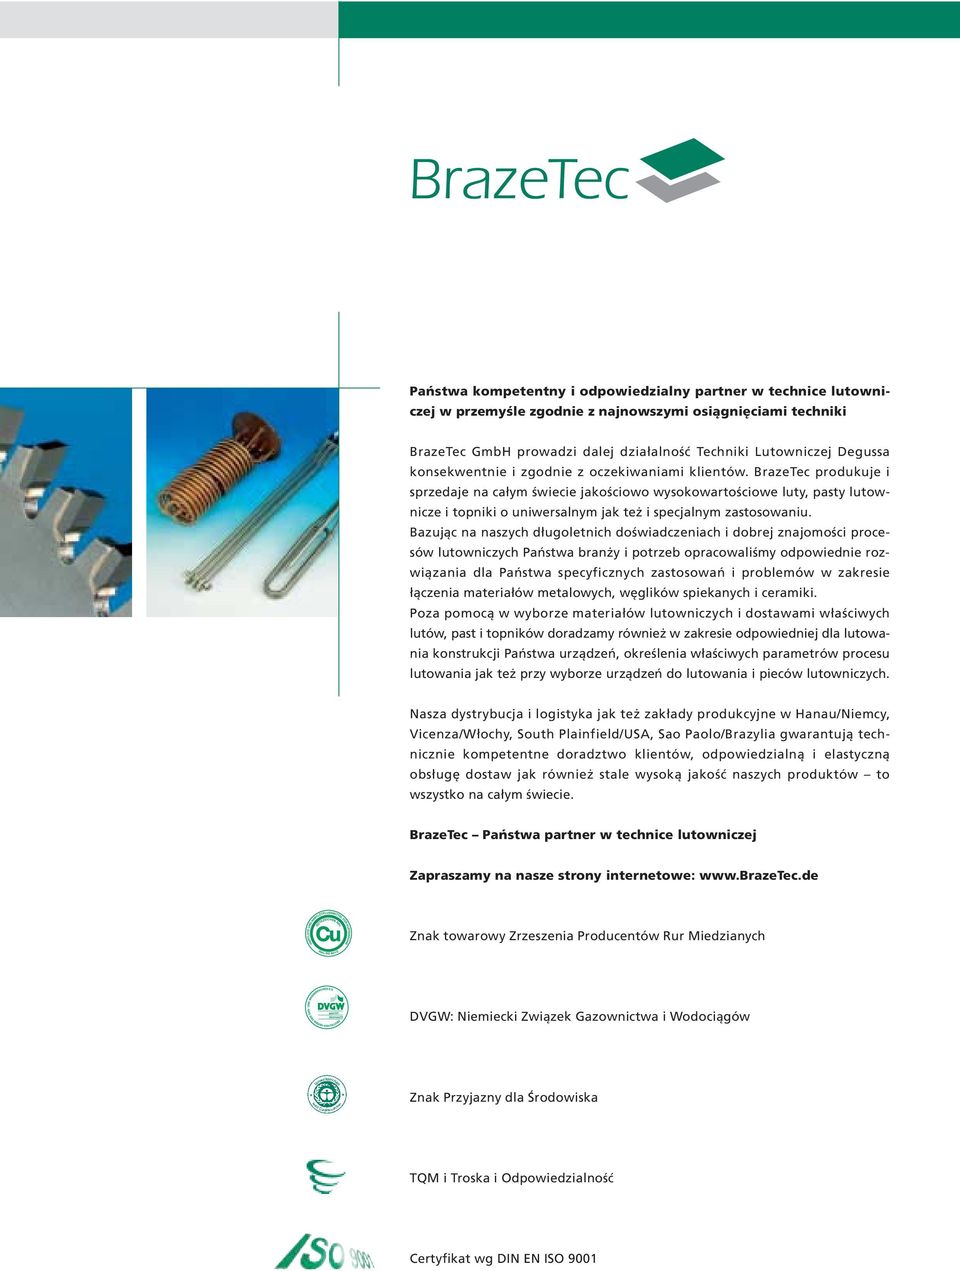 BrazeTec produkuje i sprzedaje na całym świecie jakościowo wysokowartościowe luty, pasty lutownicze i topniki o uniwersalnym jak też i specjalnym zastosowaniu.